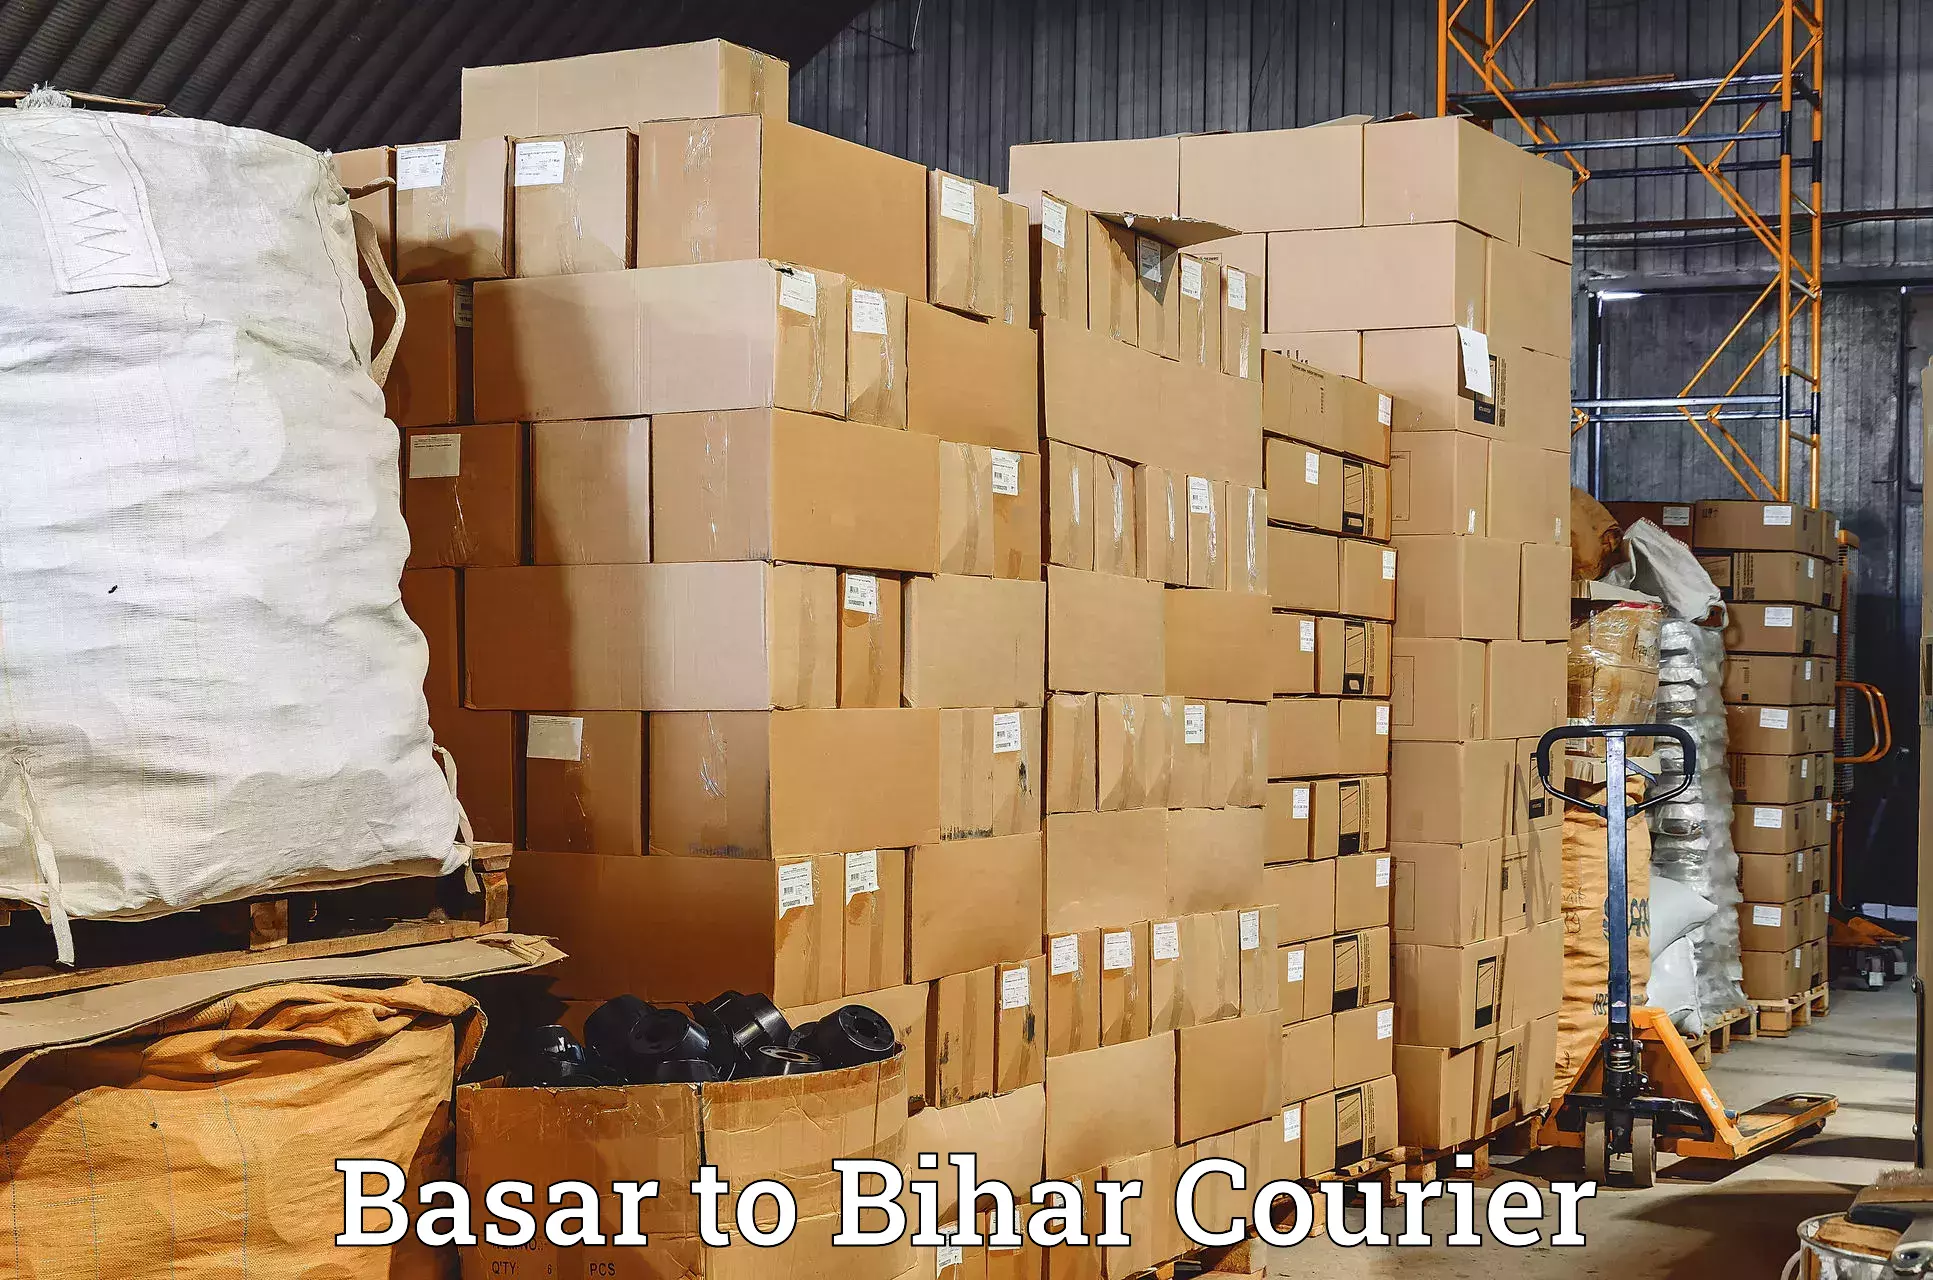 Courier service partnerships Basar to Dinara